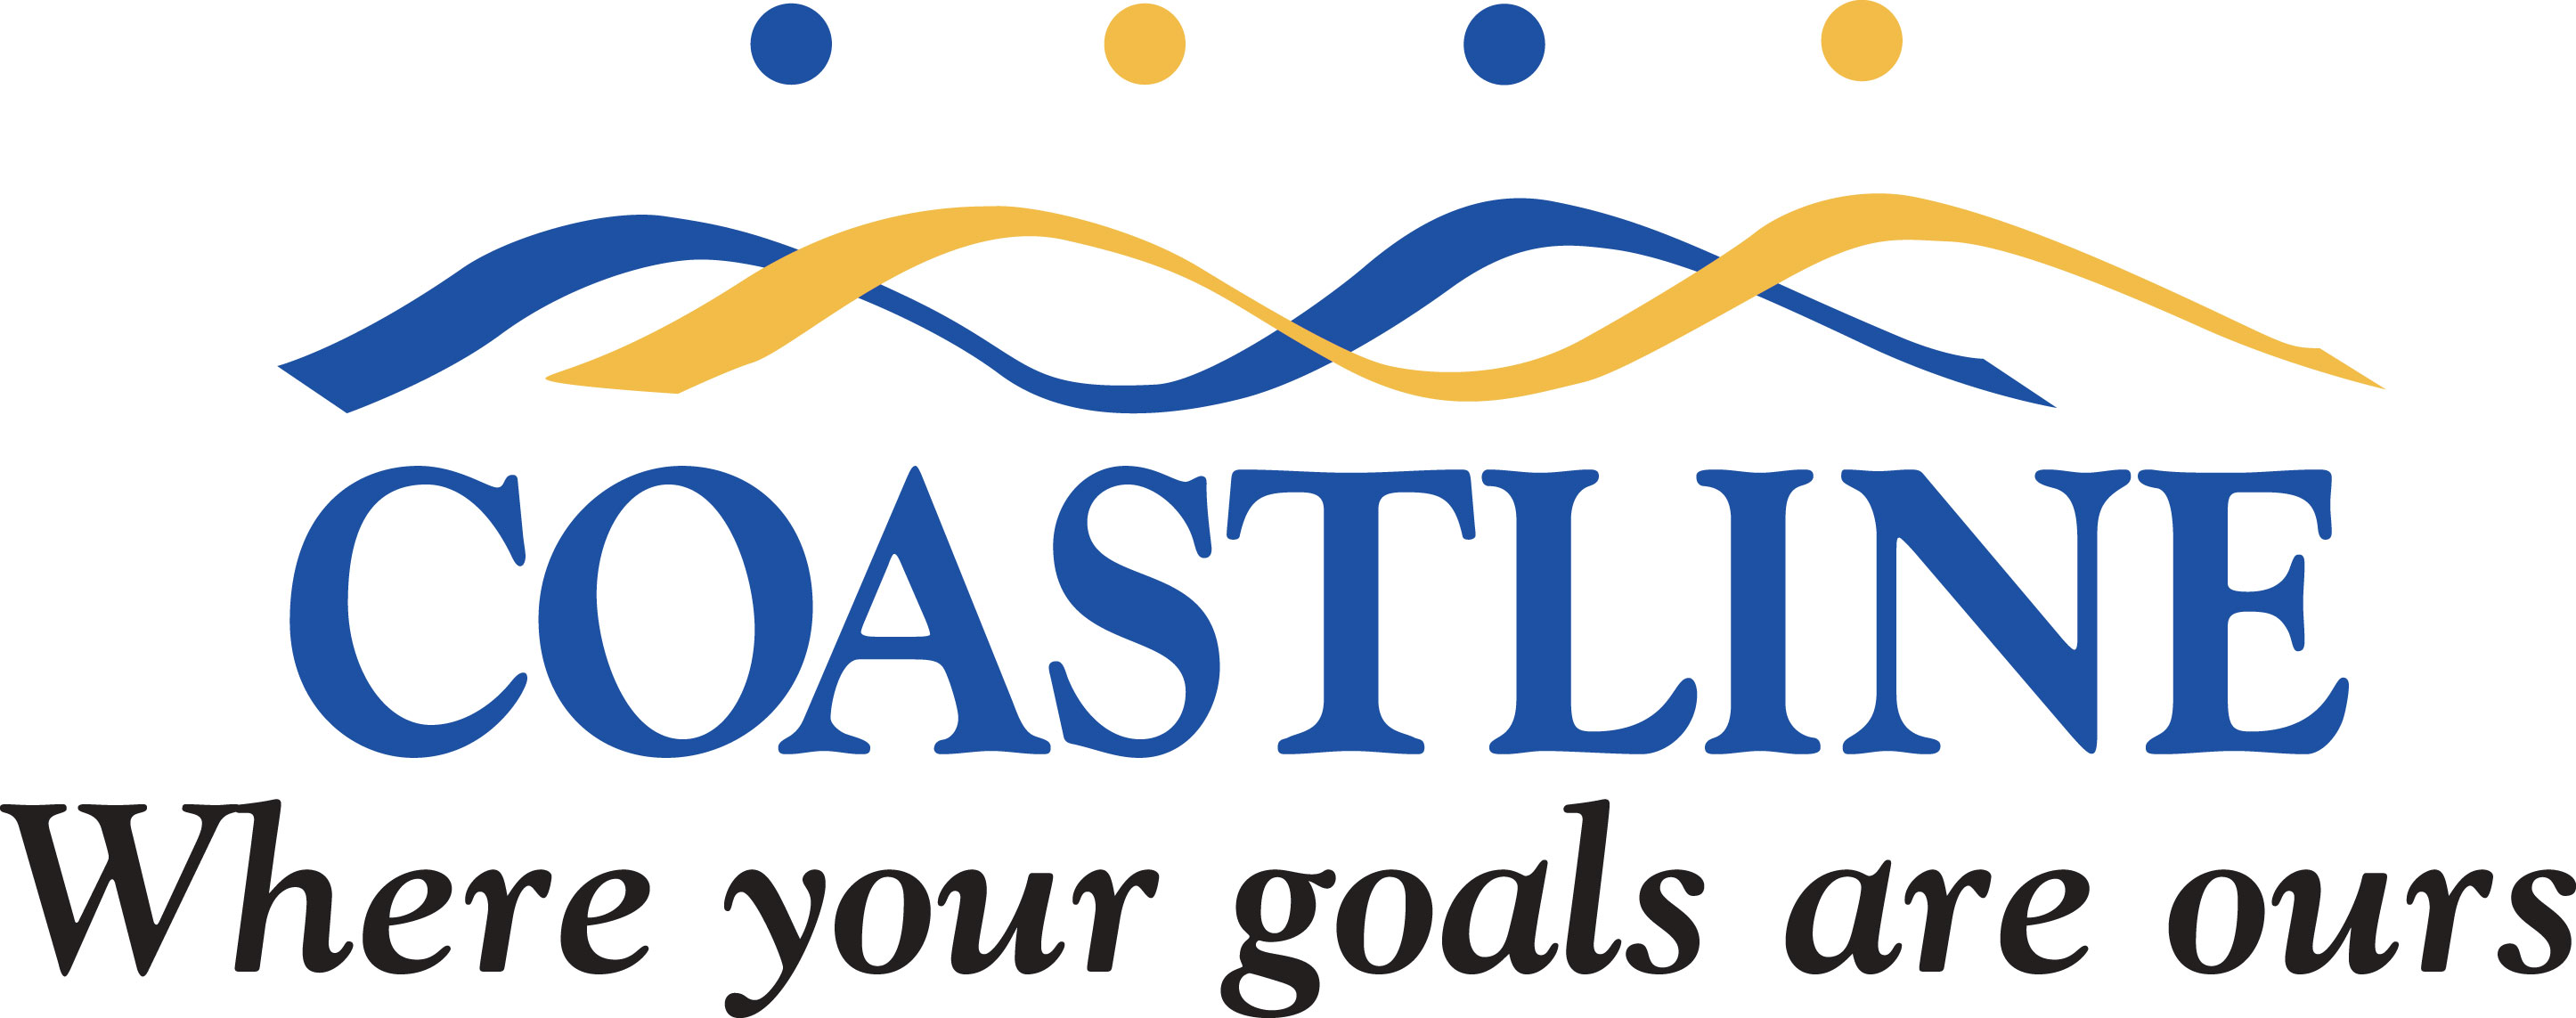 Coastline Logo Vector